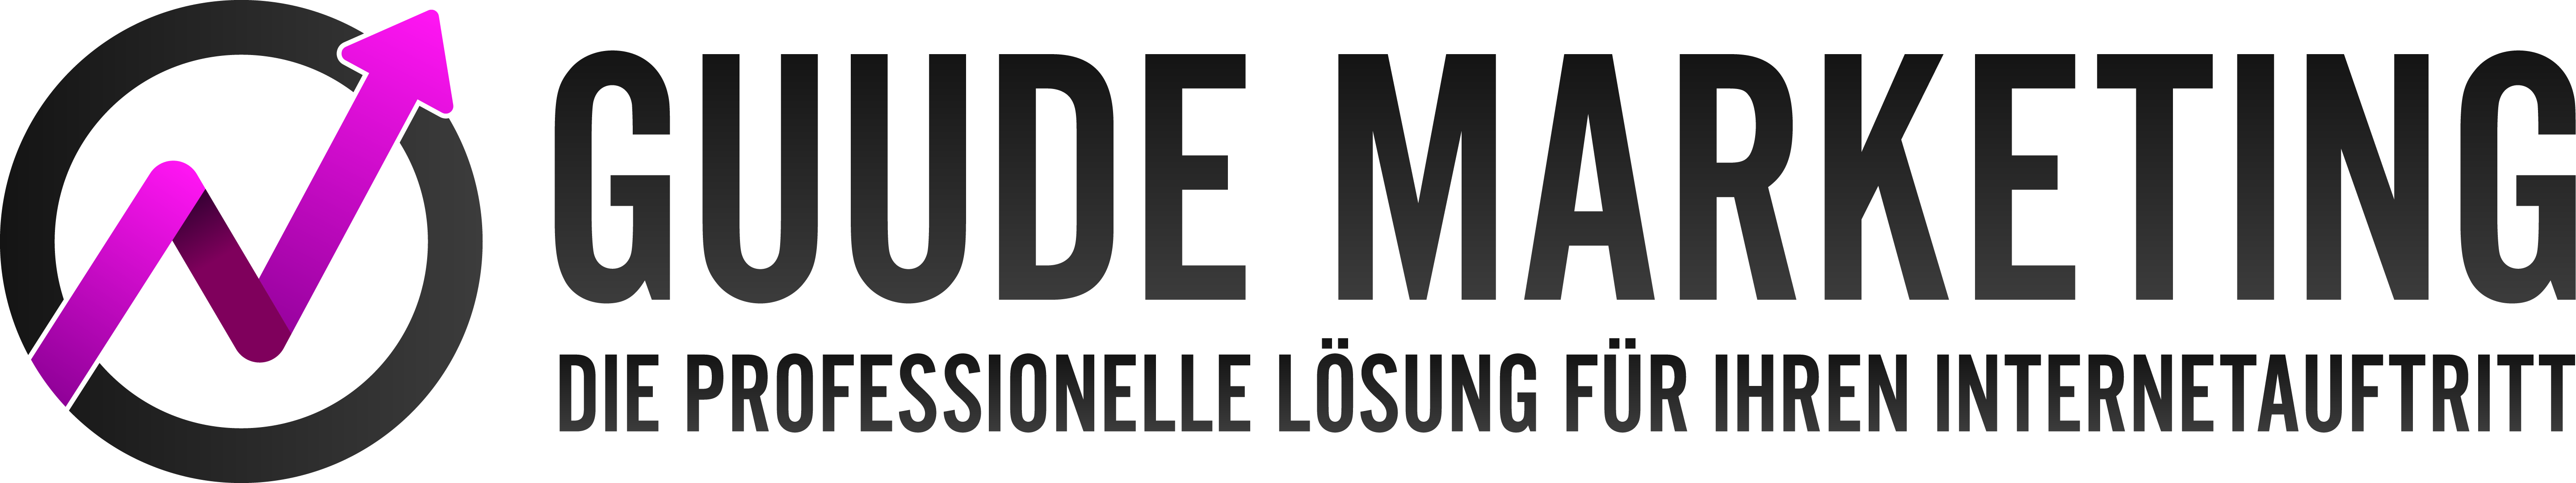 guude-marketing-logo